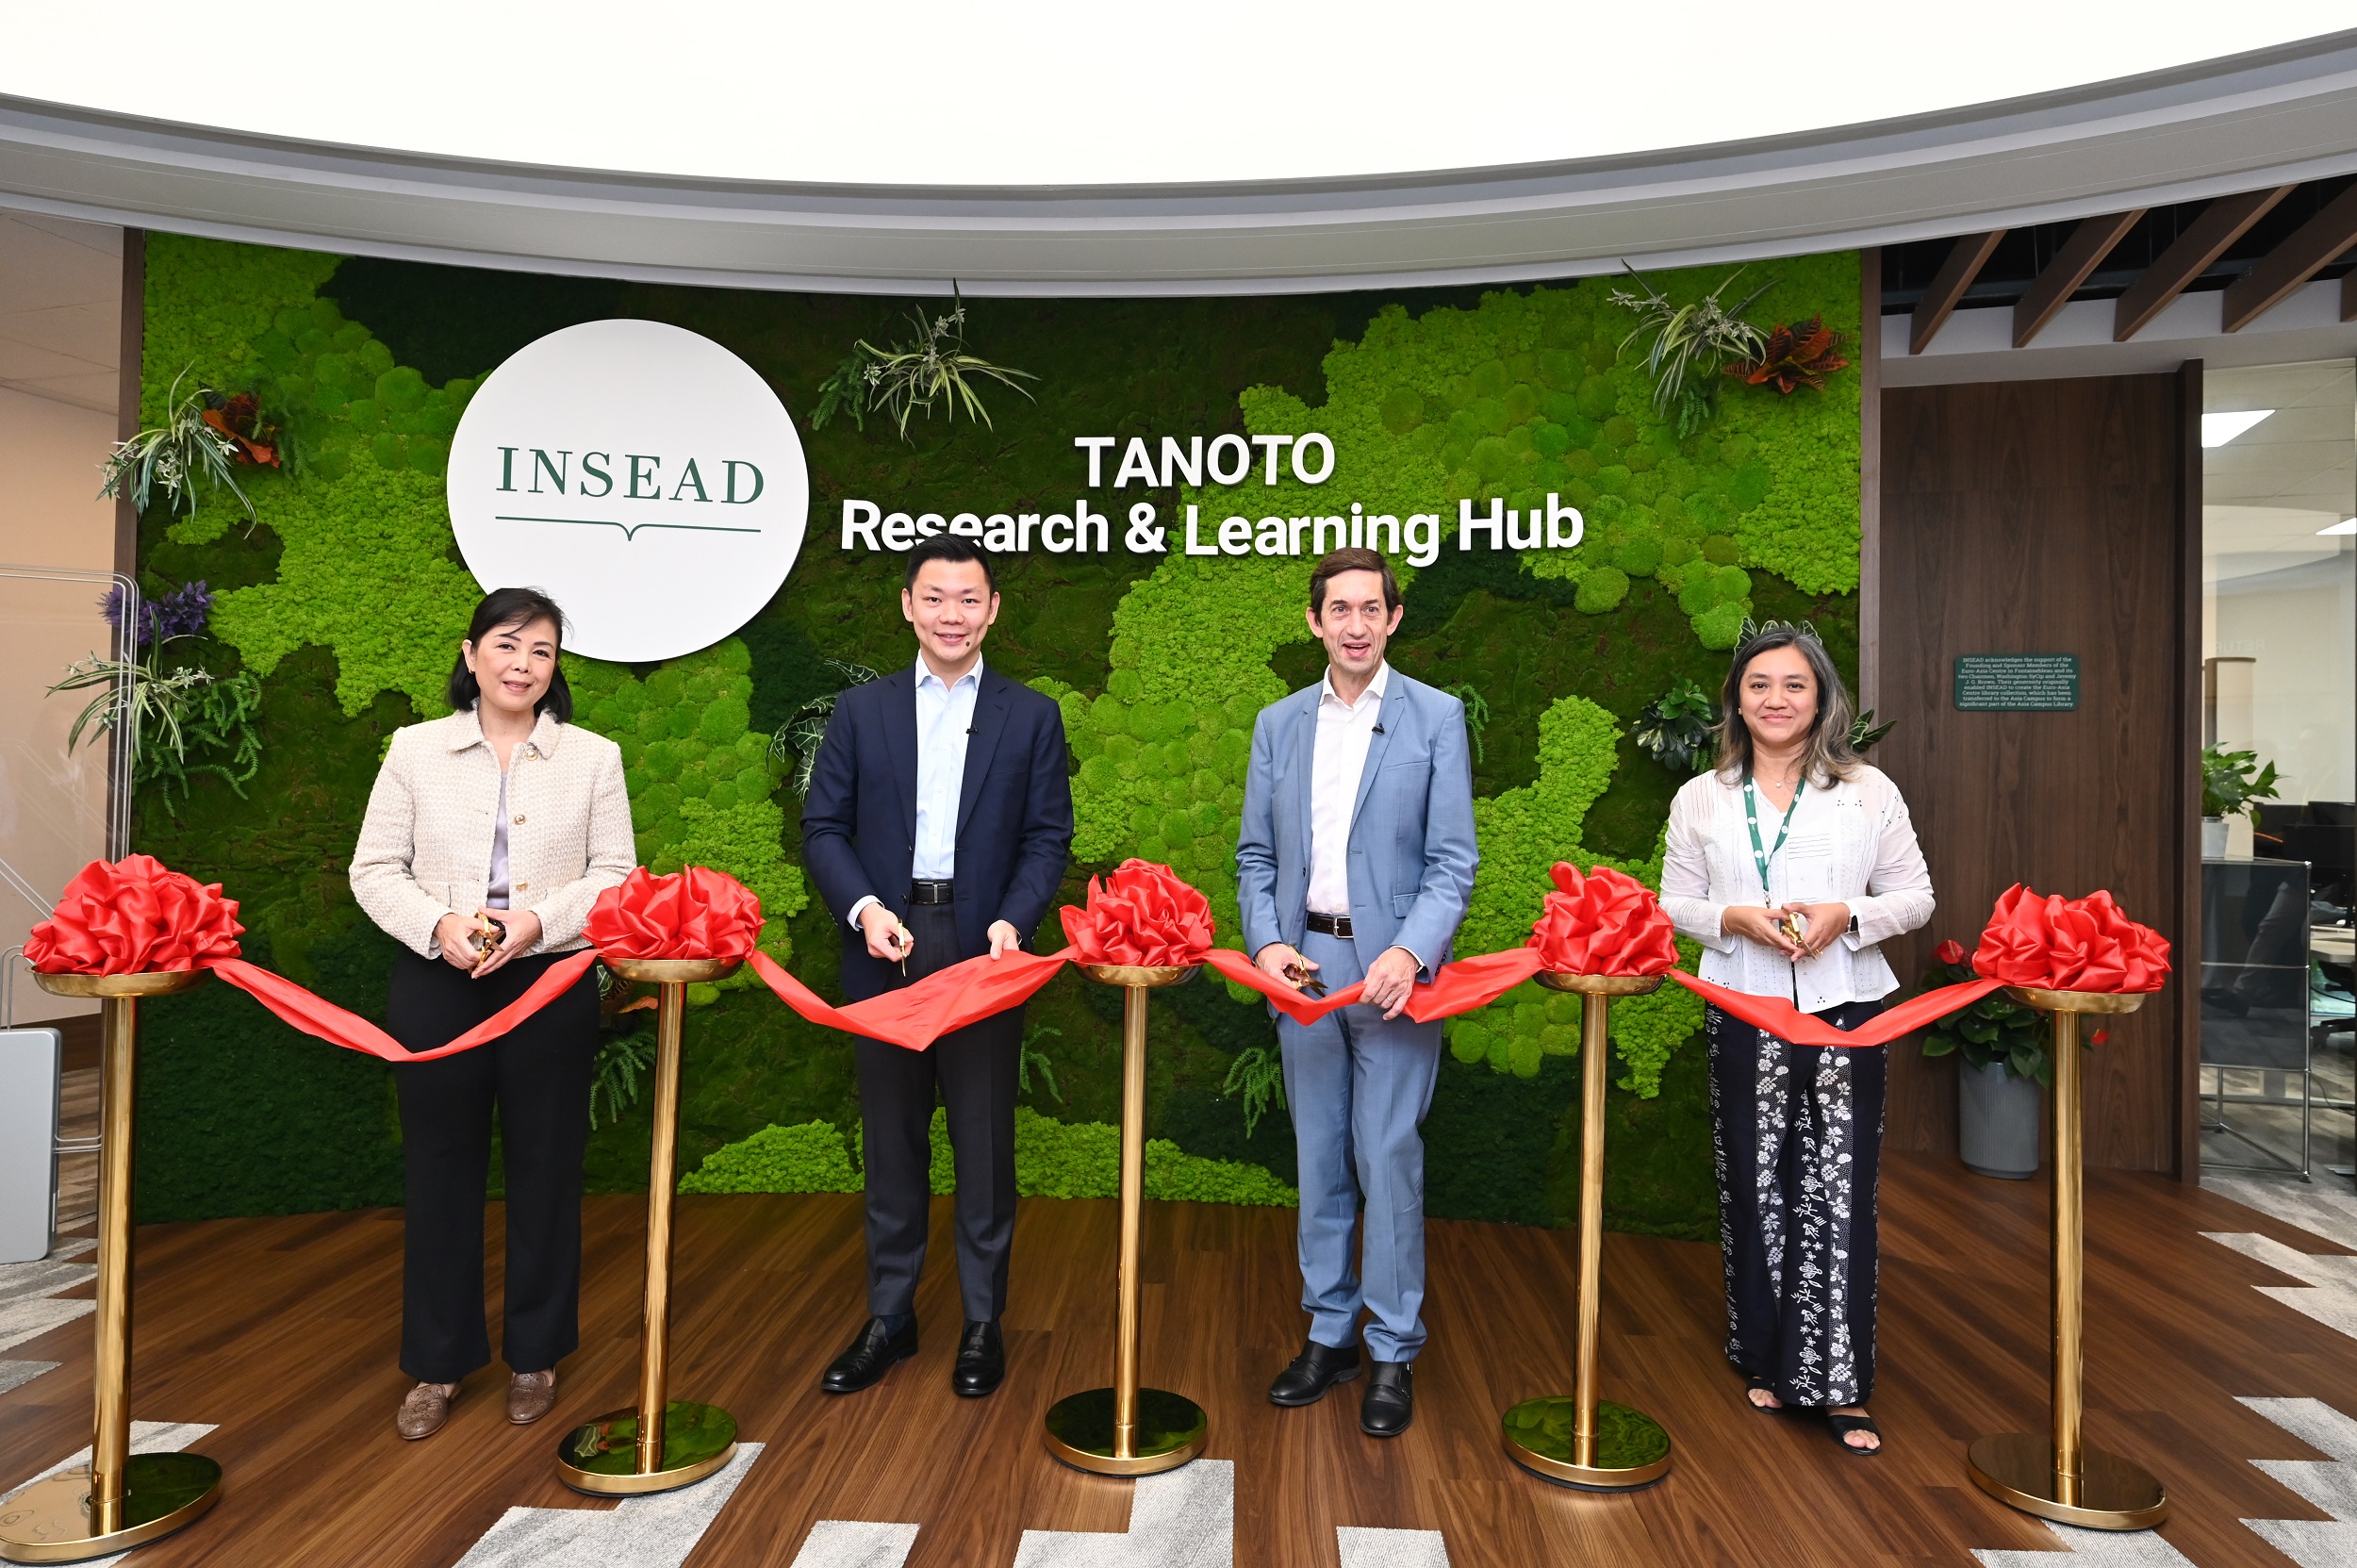 Quỹ Tanoto khánh thành Trung tâm Nghiên cứu và Học tập Tanoto tại Cơ sở châu Á của INSEAD